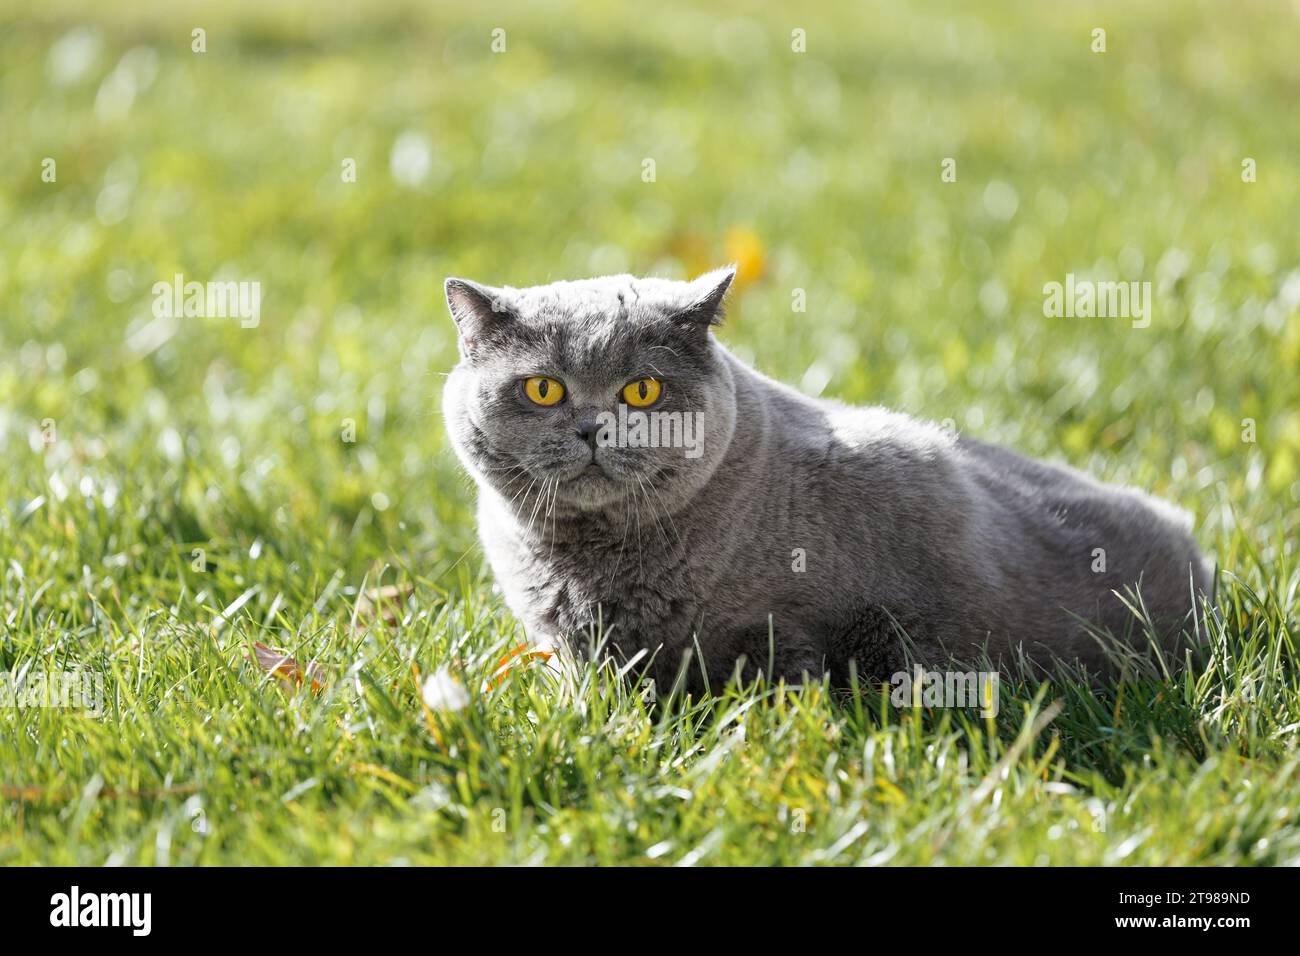 Eine fette britische Katze mit großen gelben Augen liegt auf grünem Gras mit gefallenen Blättern im Park. Fettleibige graue schottische Katze, die draußen auf dem Rasen ruht. Stockfoto